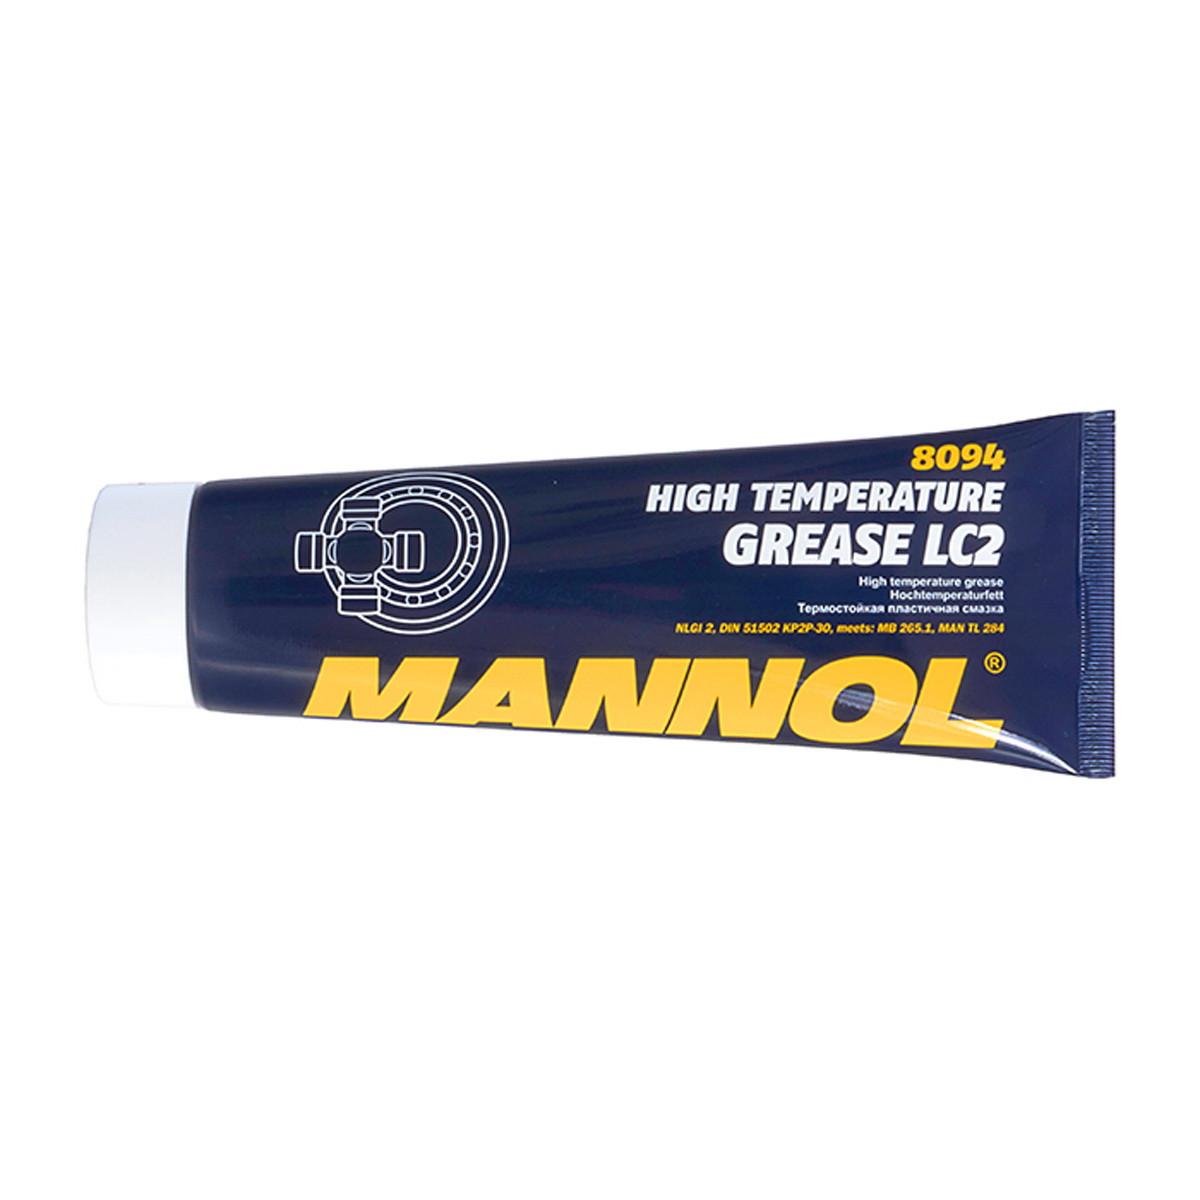 Смазка пластичная Mannol 8094 LC-2 HIGH TEMPERATURE GREASE высокотемпературная 230 г (1137355170)